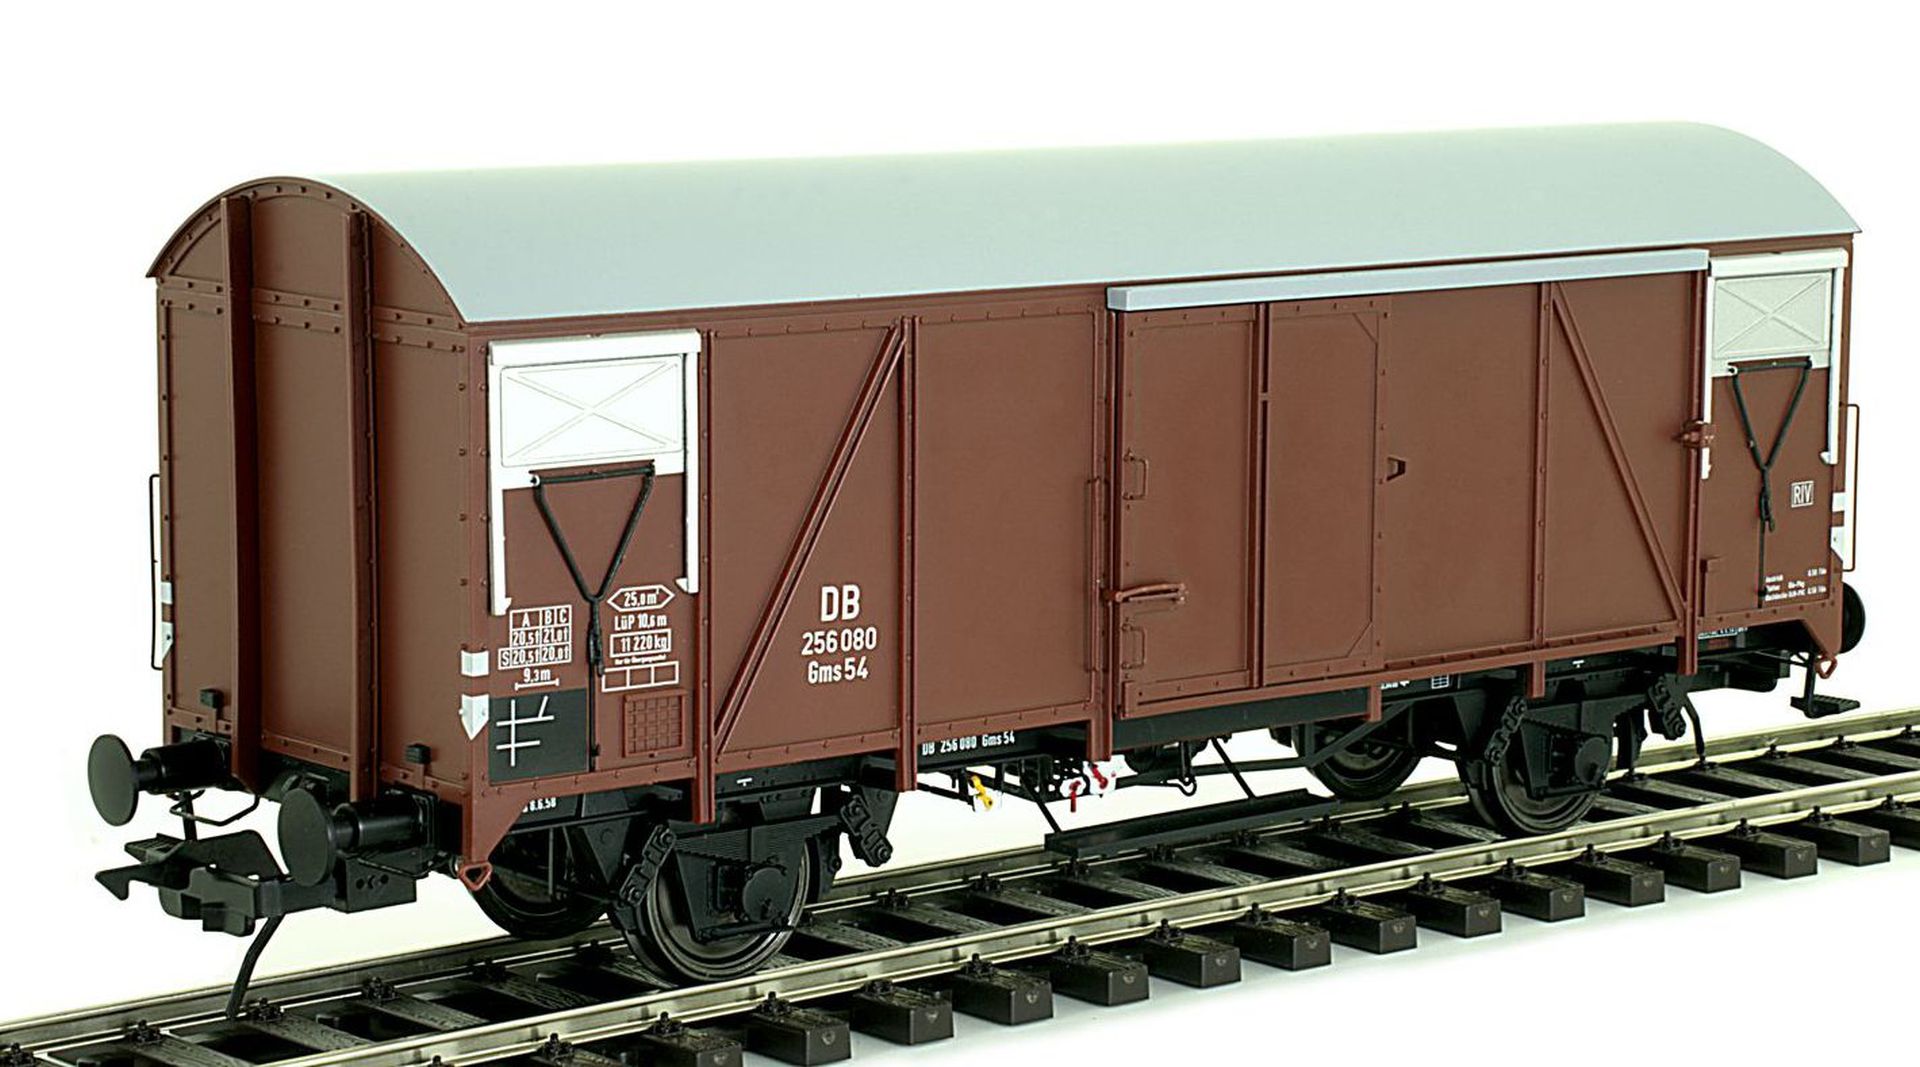 Lenz 42234-05 - Gedeckter Güterwagen Gms 54, DB, Ep.III, 256 080